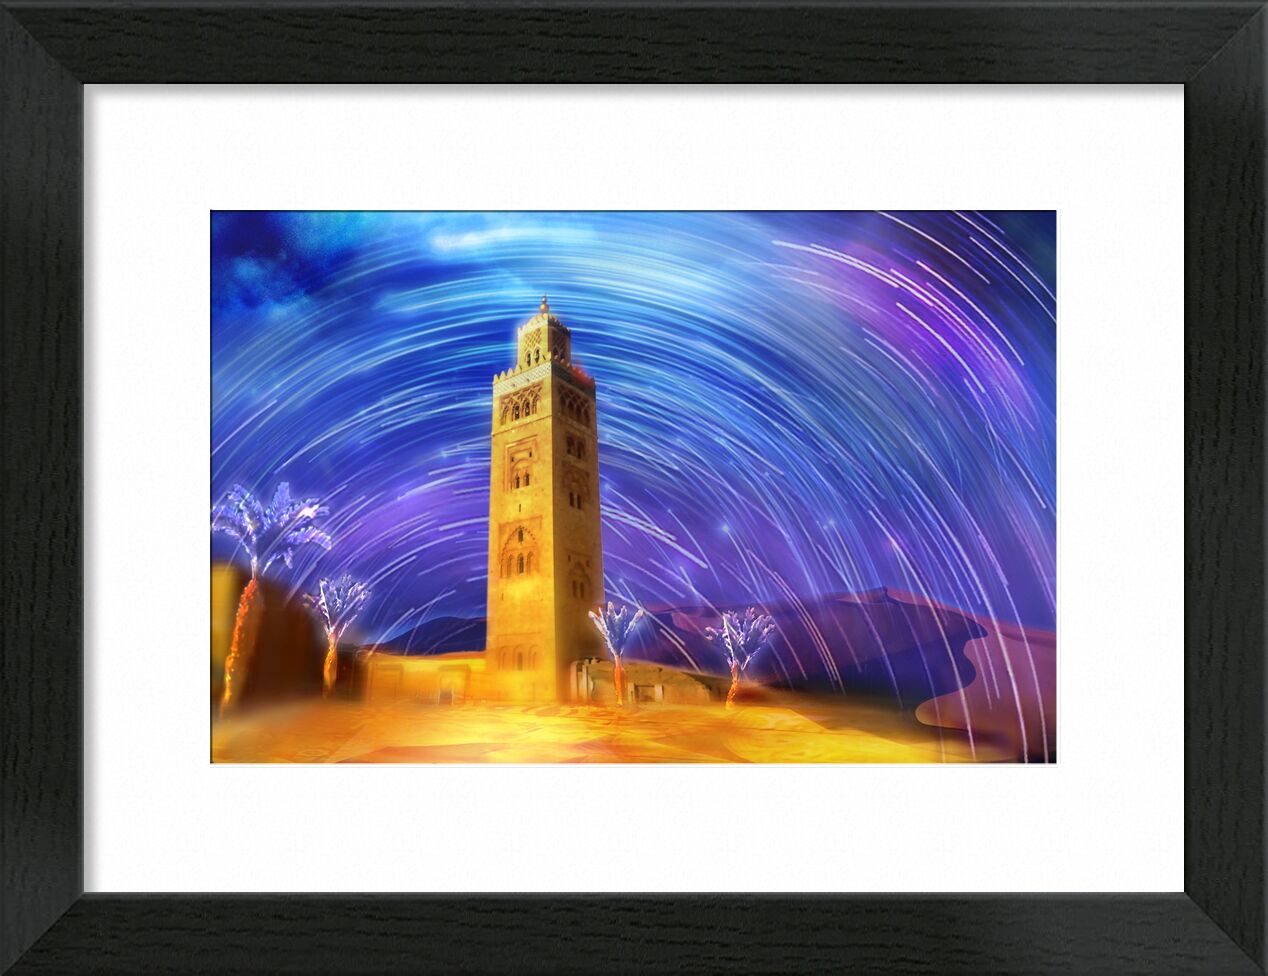 Marrakech de Adam da Silva, Prodi Art, couleurs, maroc, désert, étoiles, ciel, dune, sable, étoiles filantes, mosquée, palmier, magique